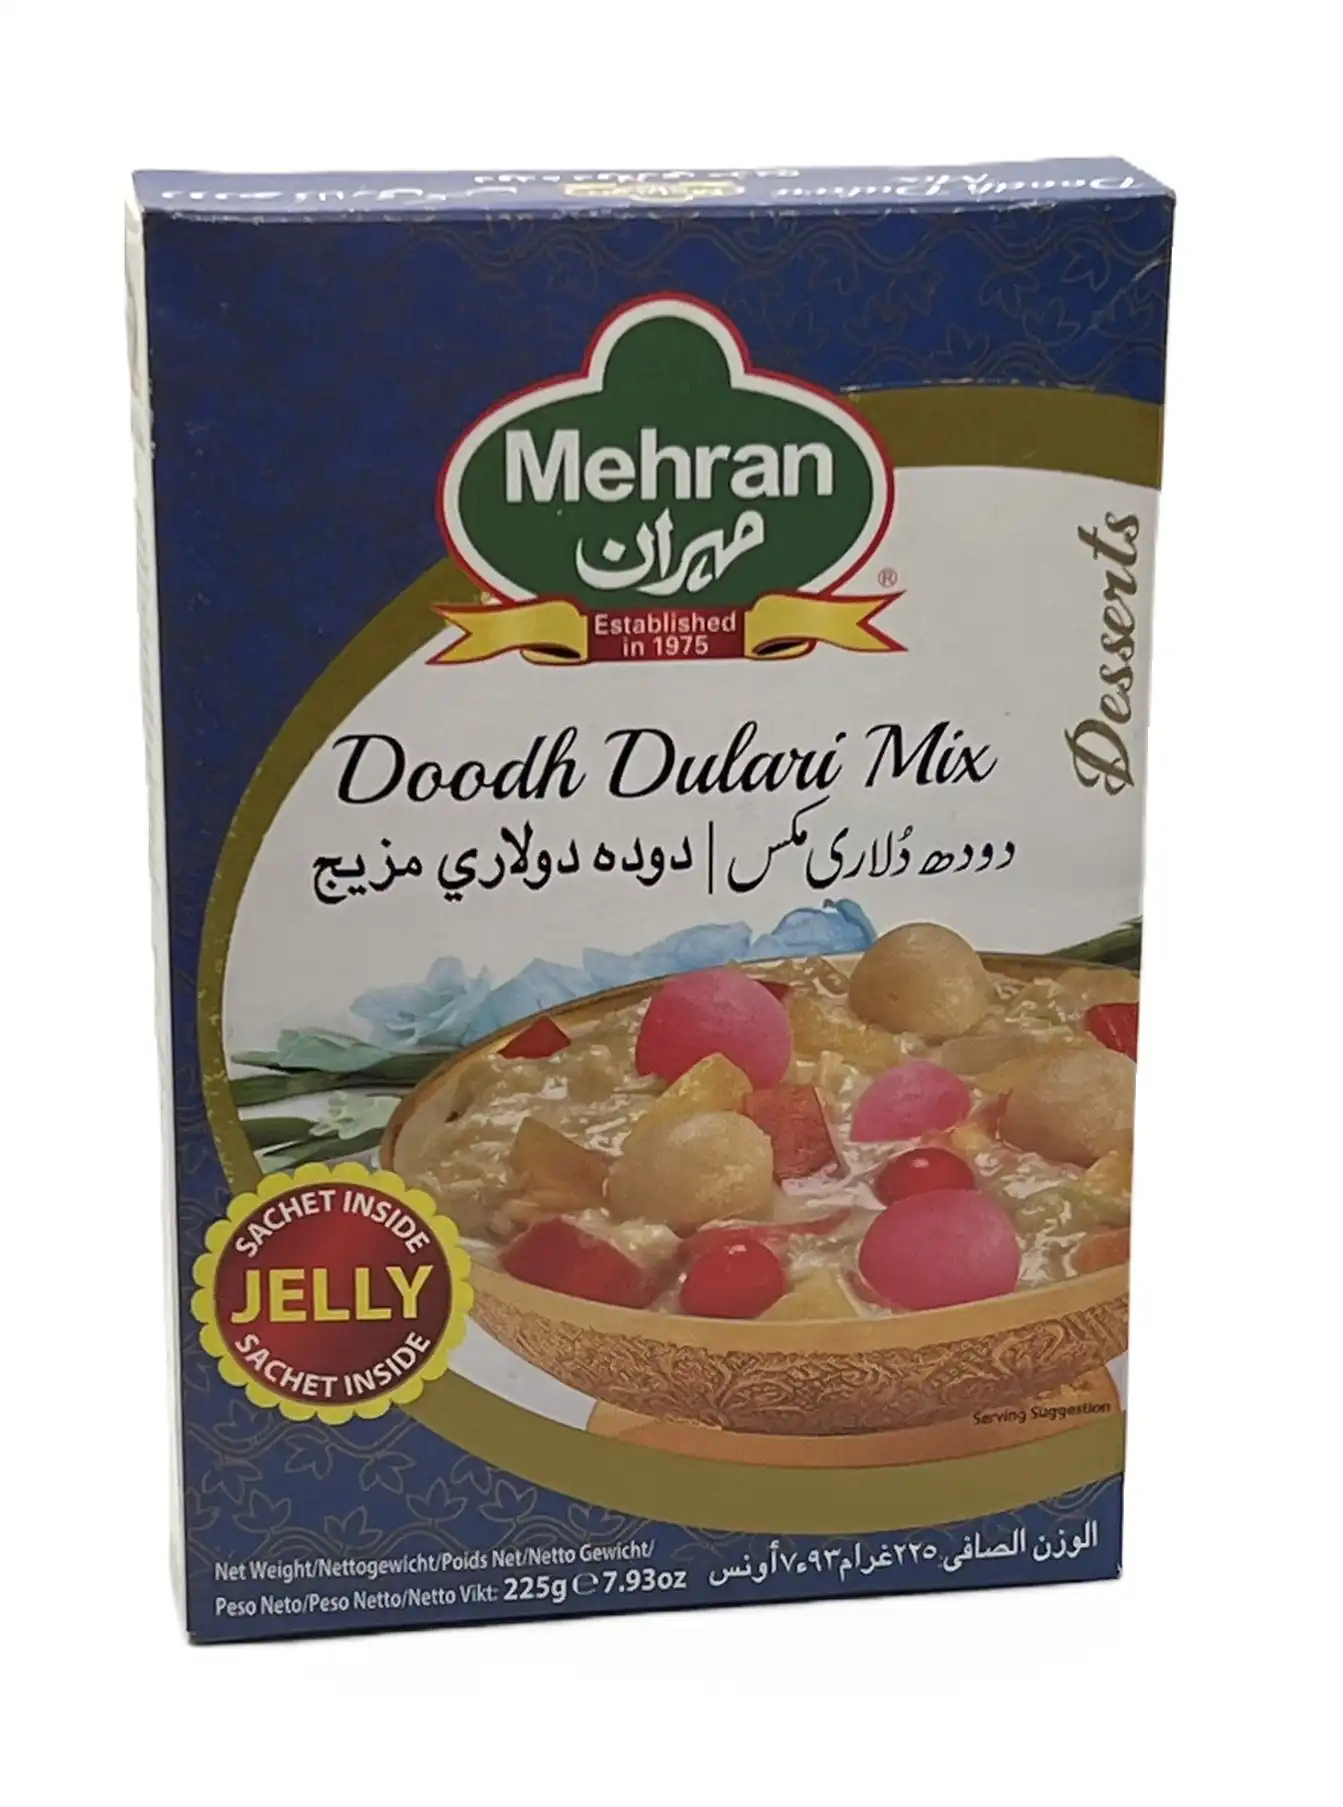 doodh dulari mix-mehran